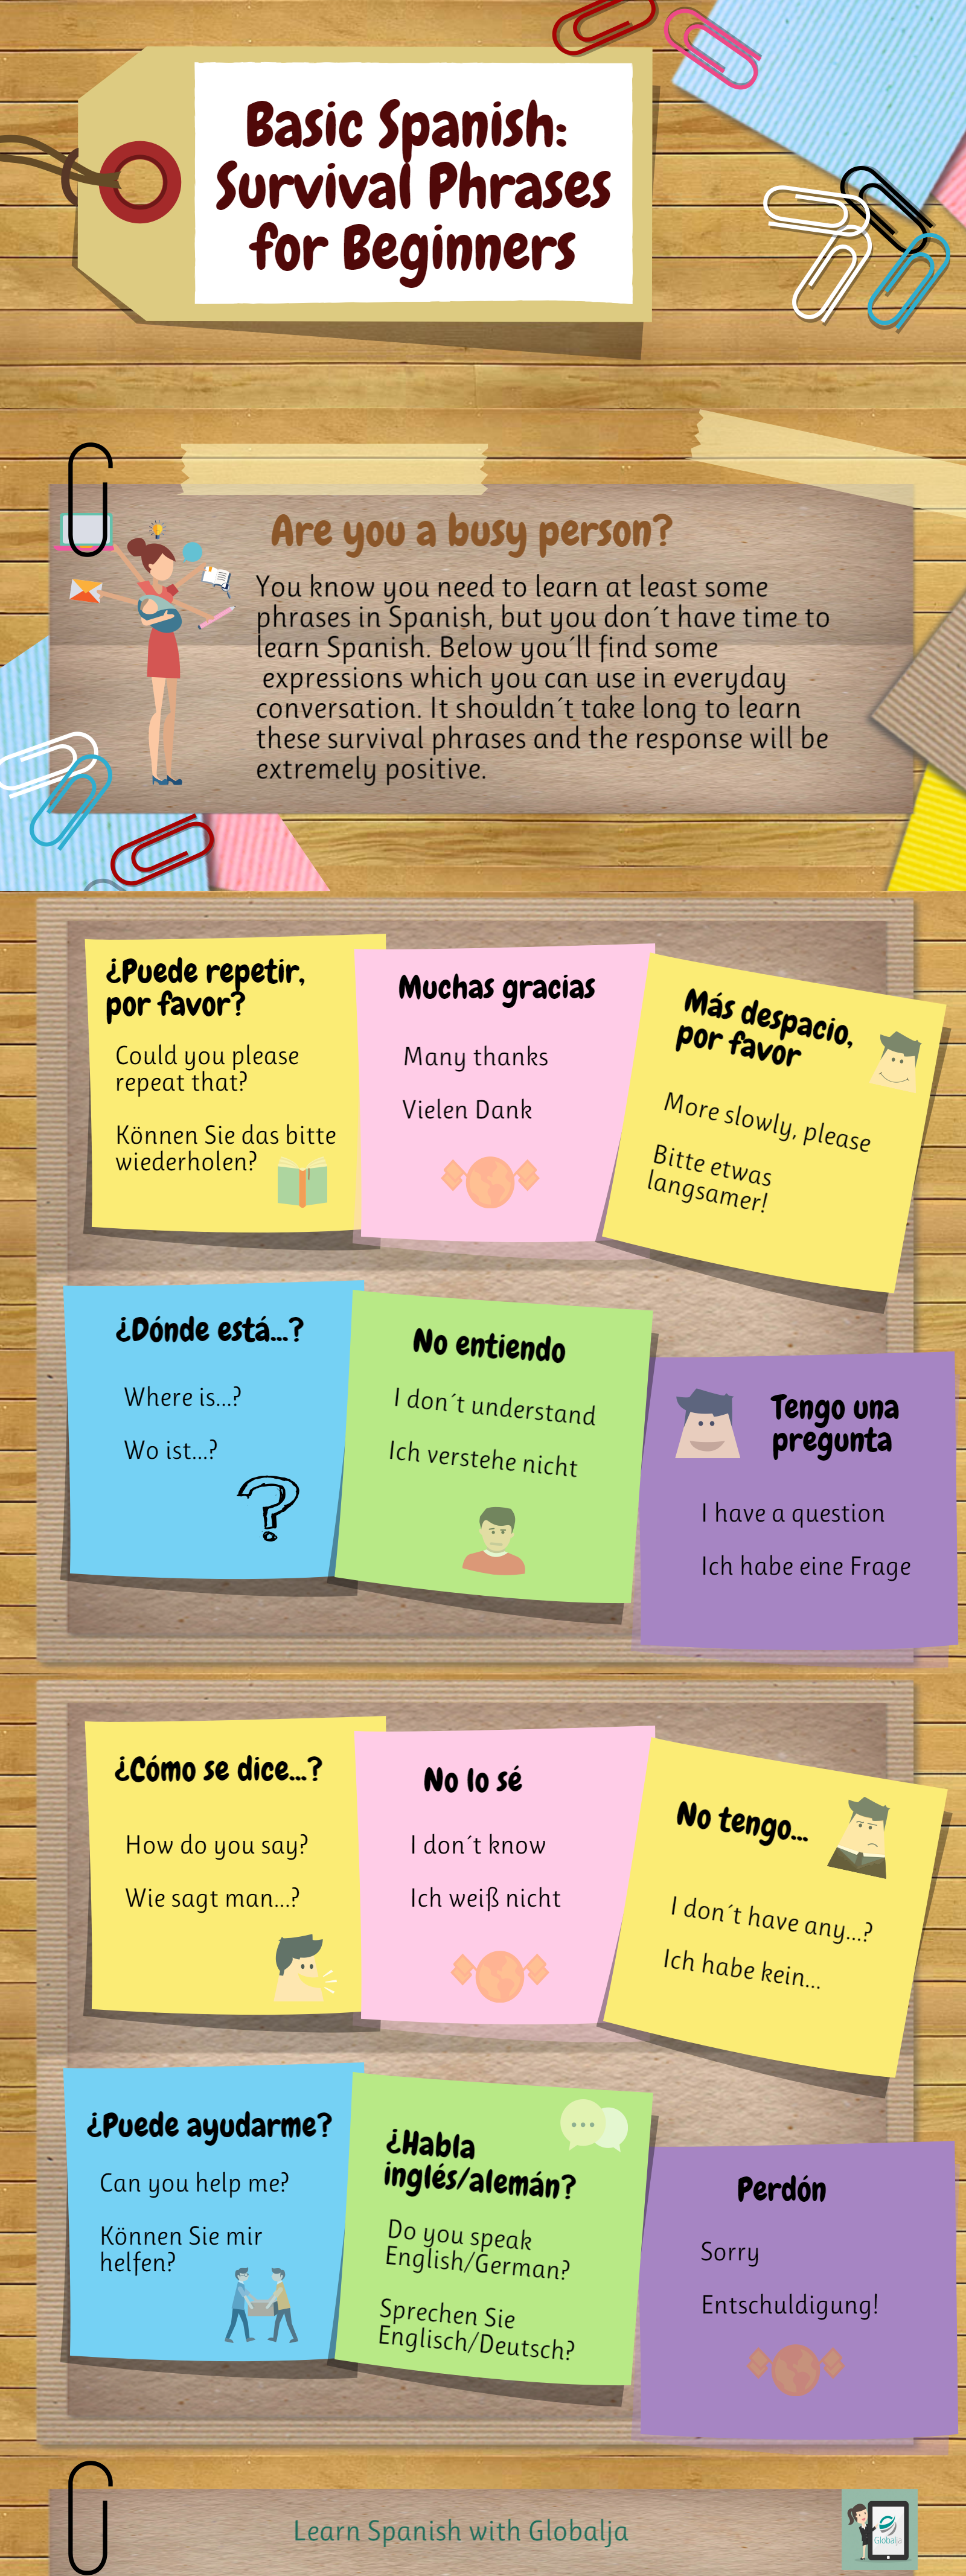 Basic Spanish: Survival Phrases for Beginners